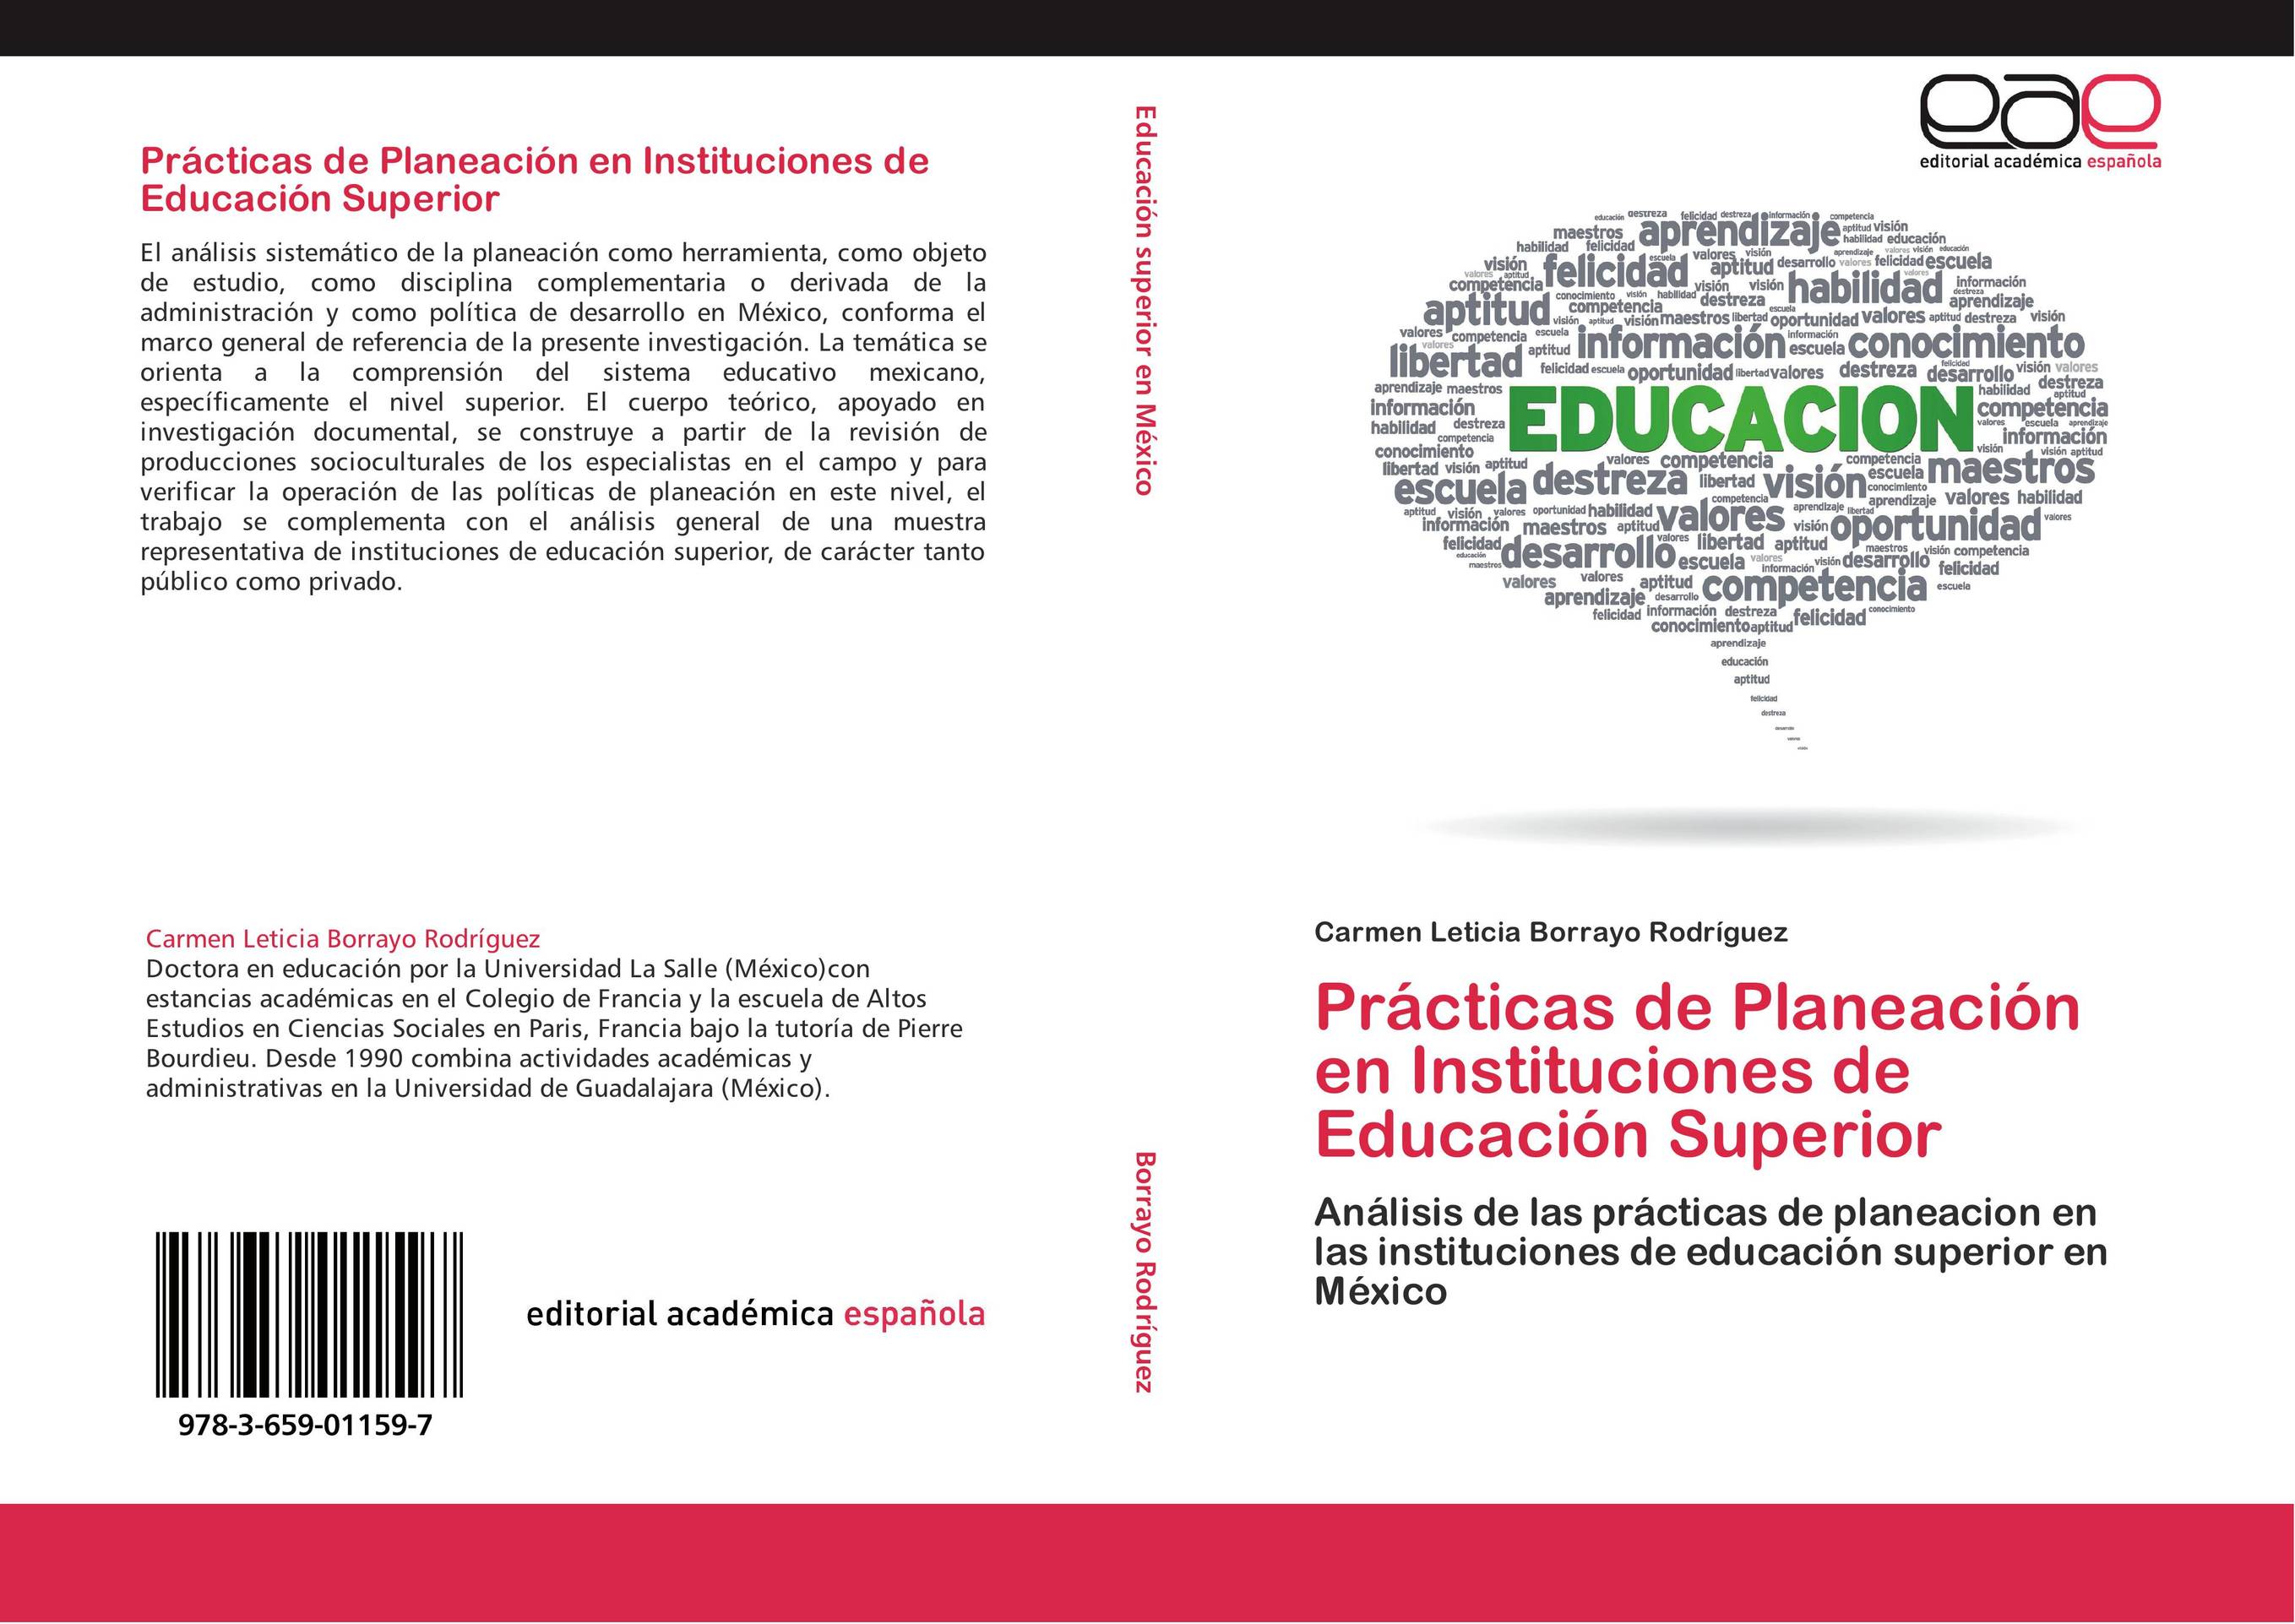 Prácticas de Planeación en Instituciones de Educación Superior